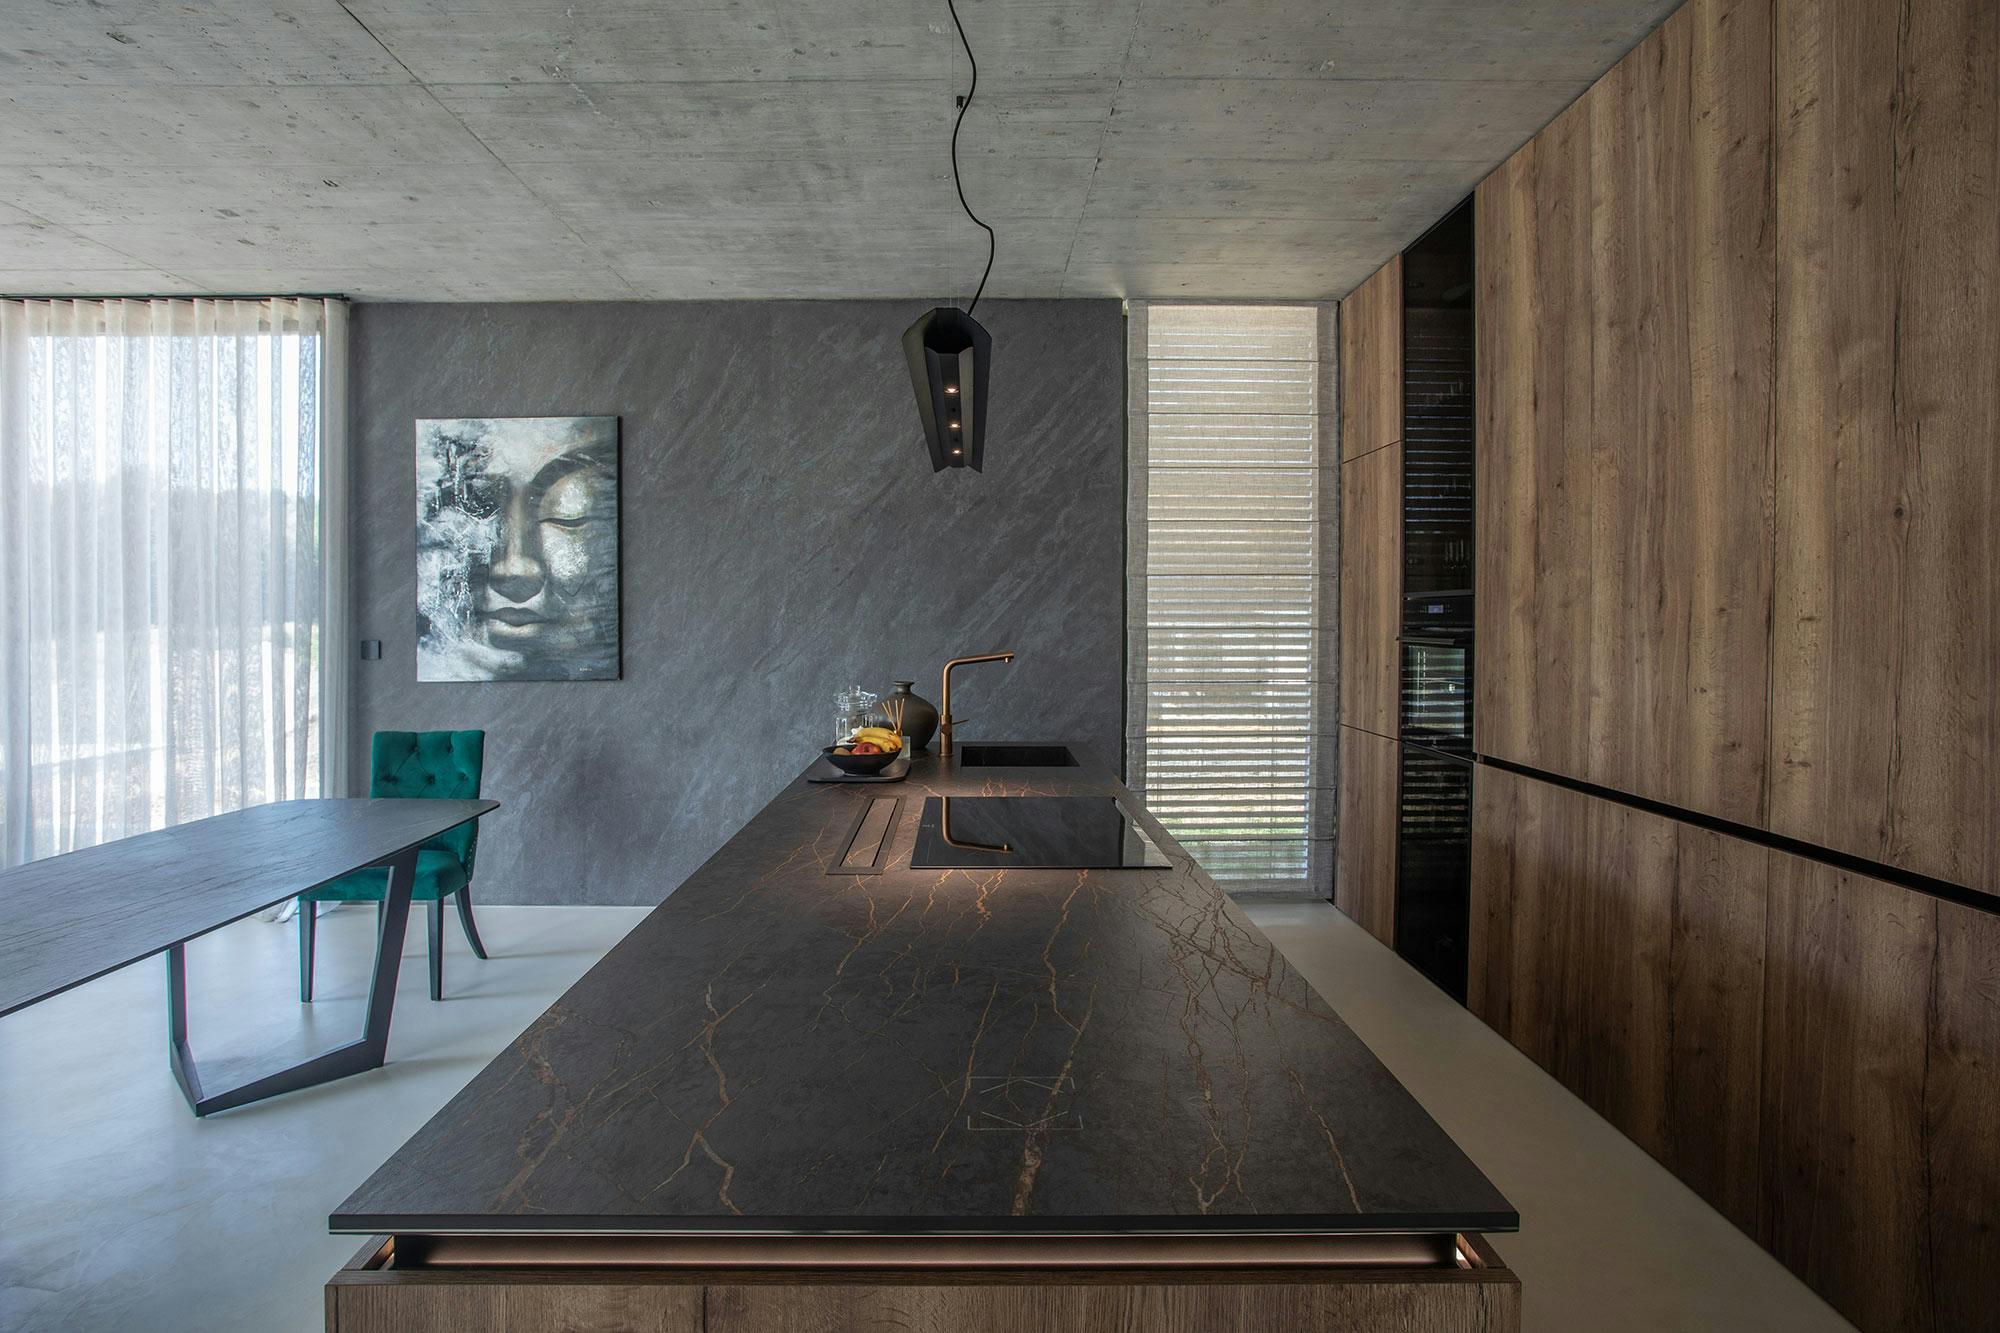 Imagem número 56 da actual secção de Um projeto de design de interiores premiado concluído com Dekton Kelya da Cosentino Portugal